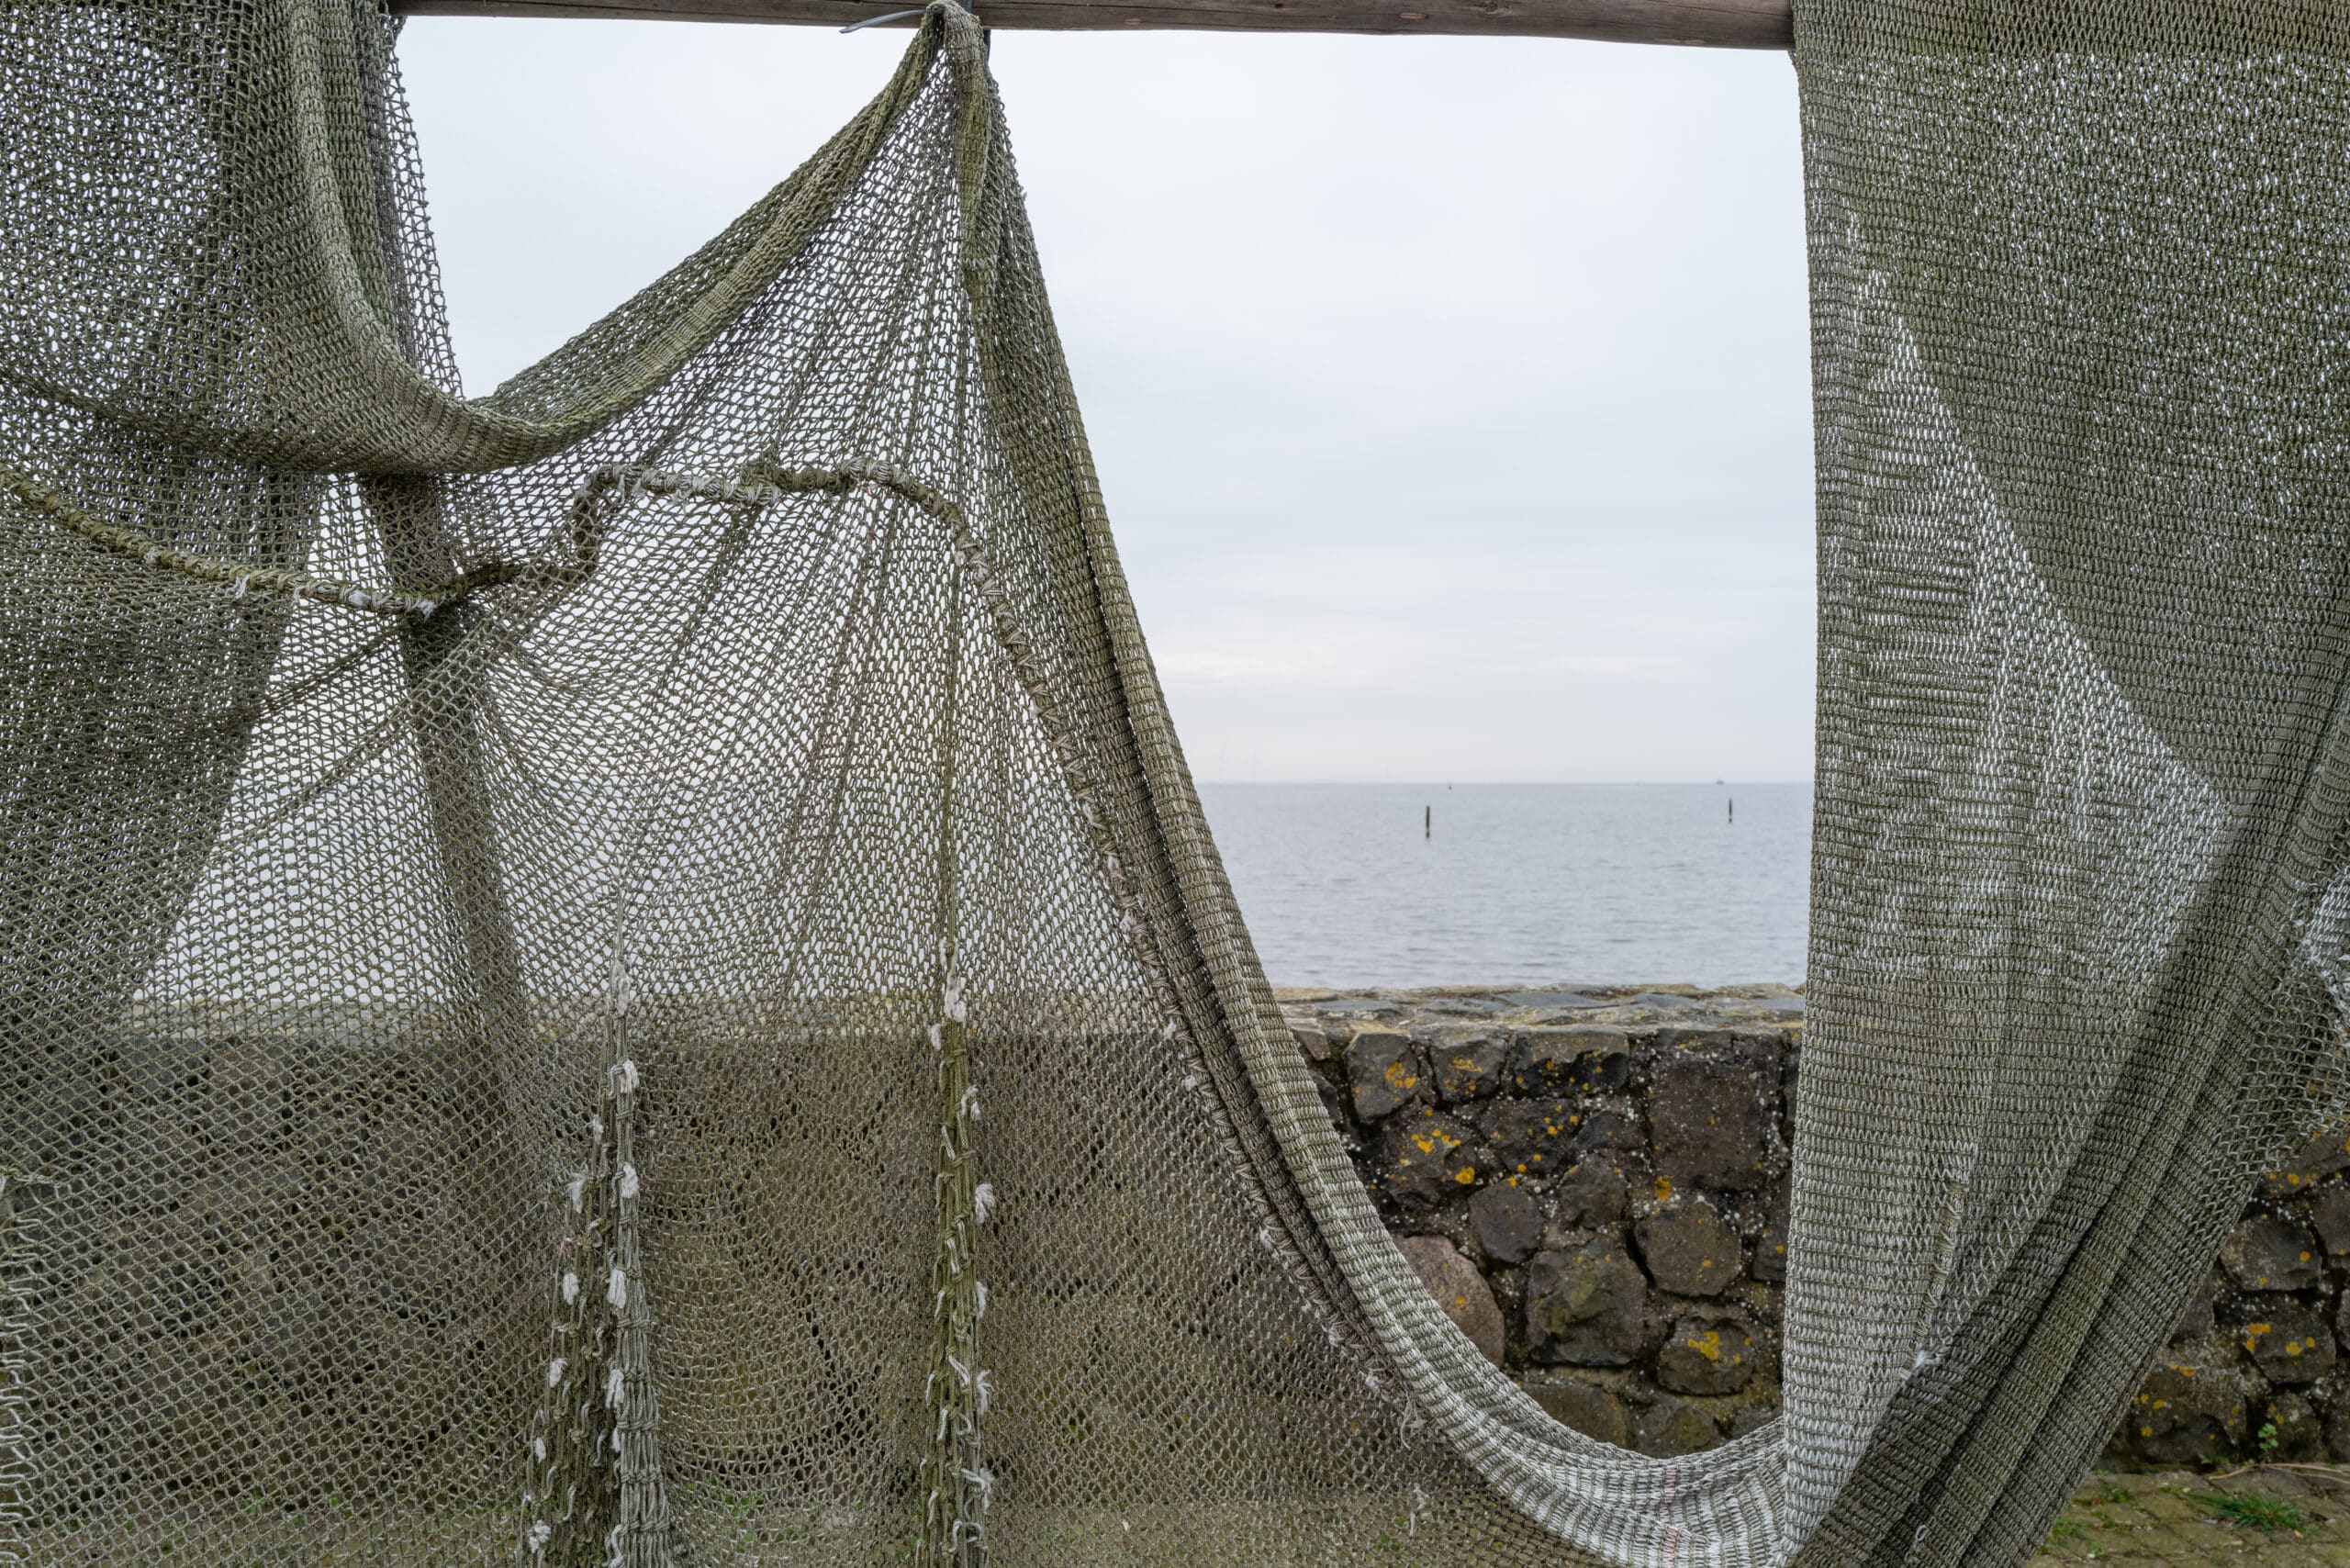 fanatic4fishing.com : Do you need a net for pier fishing?